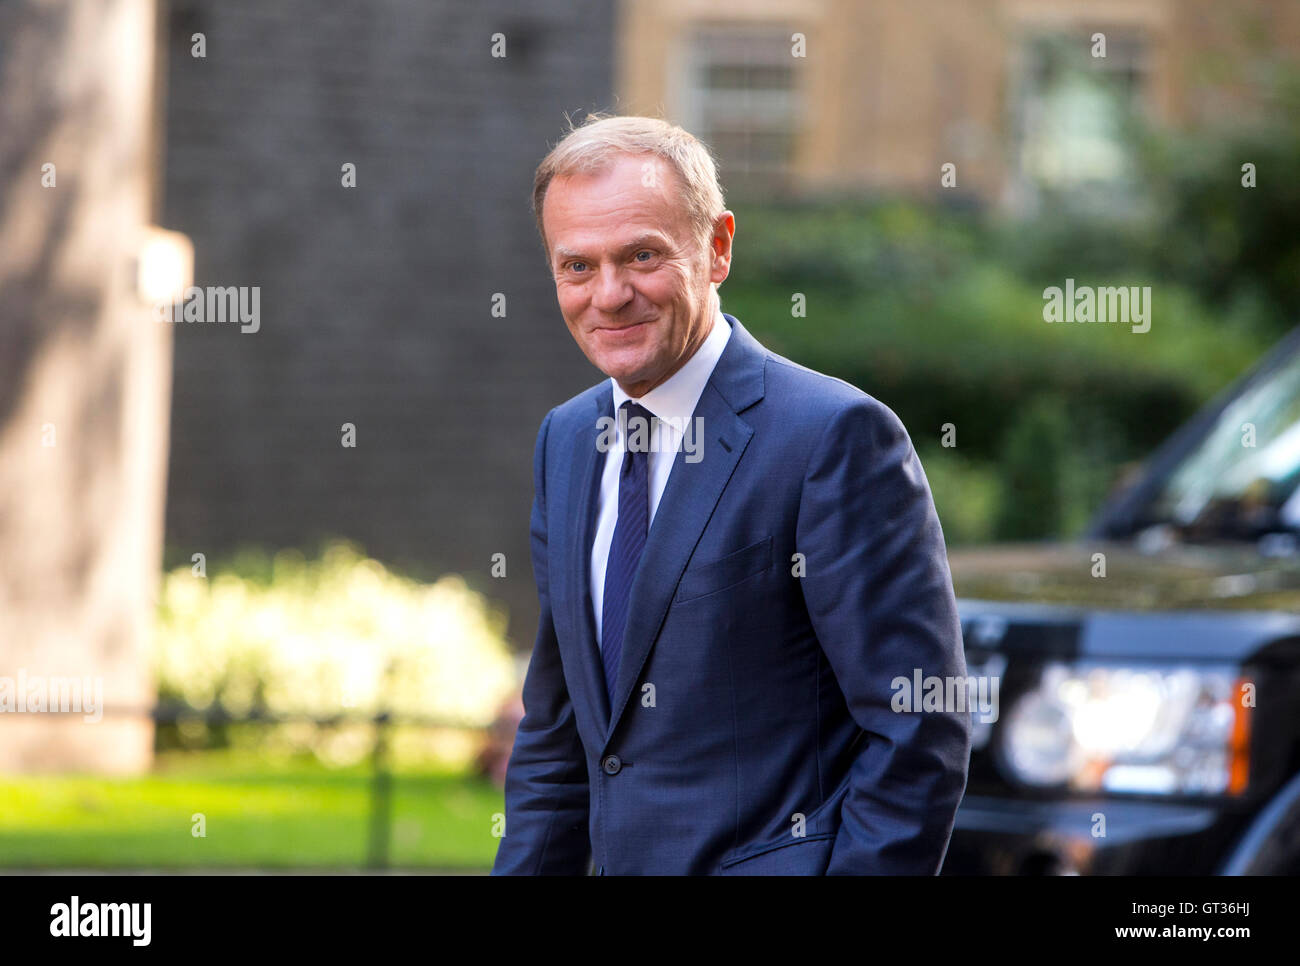 Donald Tusk, Président du Conseil européen depuis le 1er décembre 2014, arrive au 10 Downing Street d'avoir des entretiens avec Theresa peut Banque D'Images